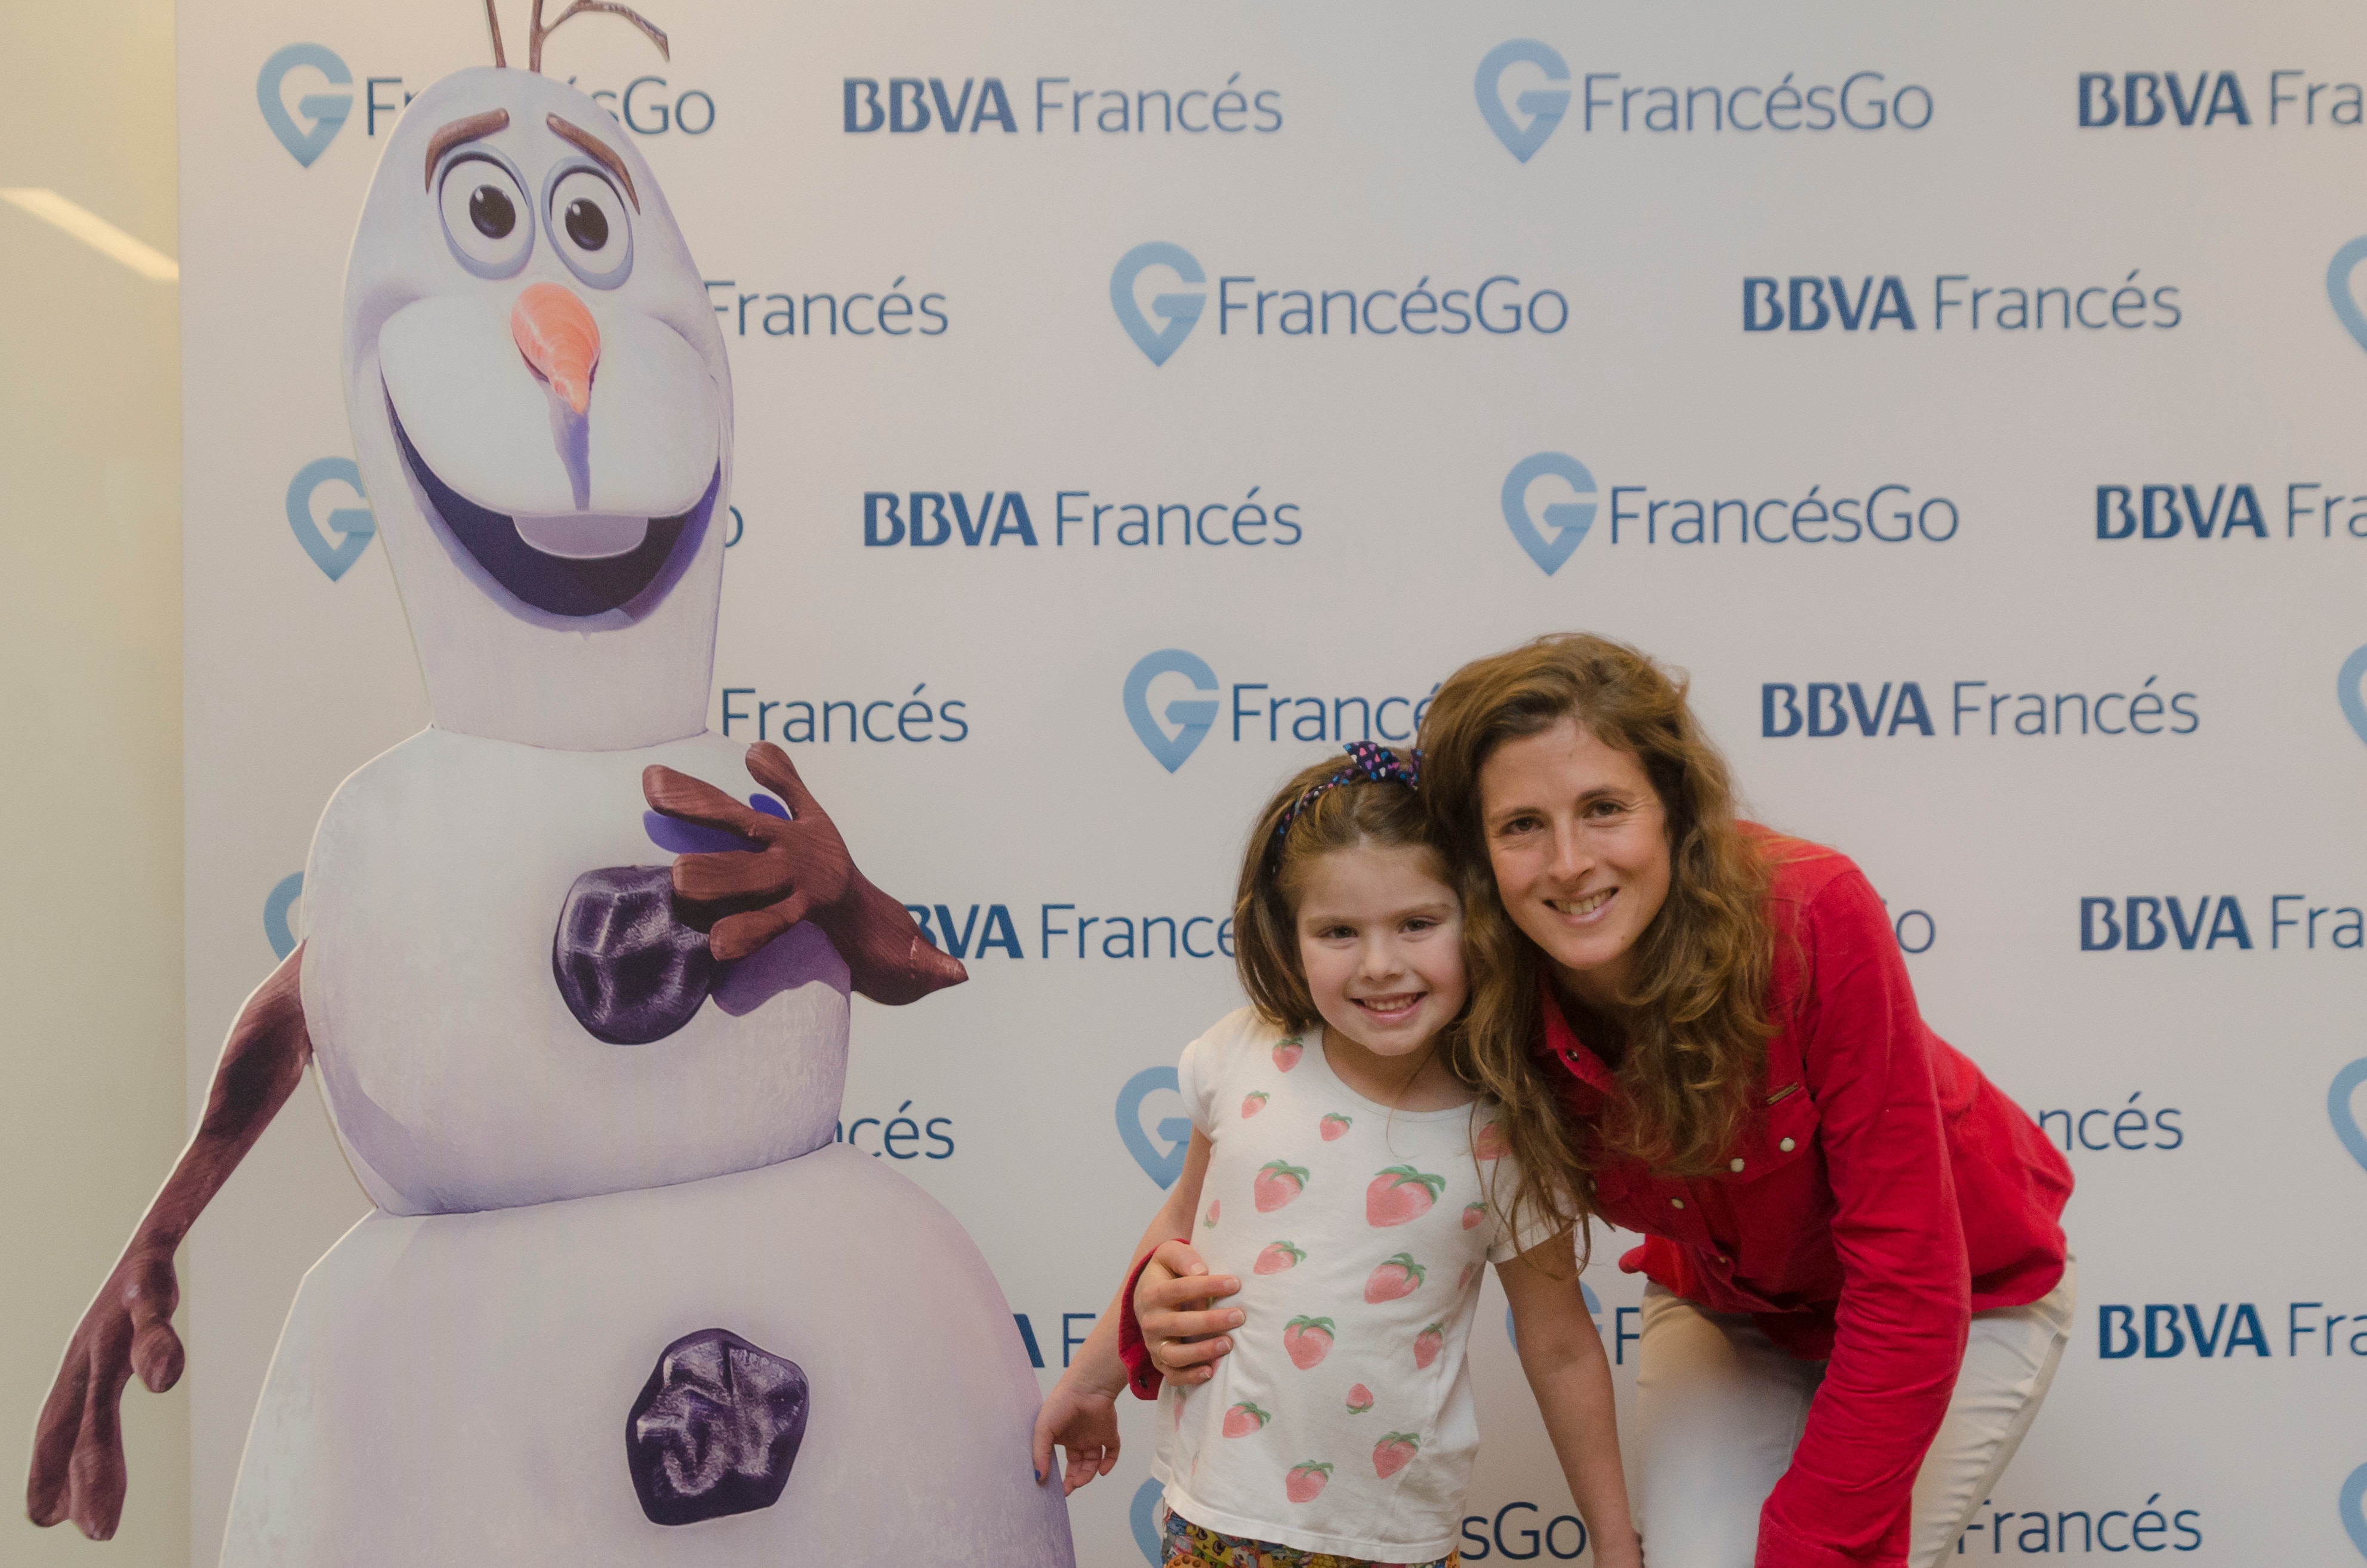 Disney On Ice patrocinado por BBVA Francés